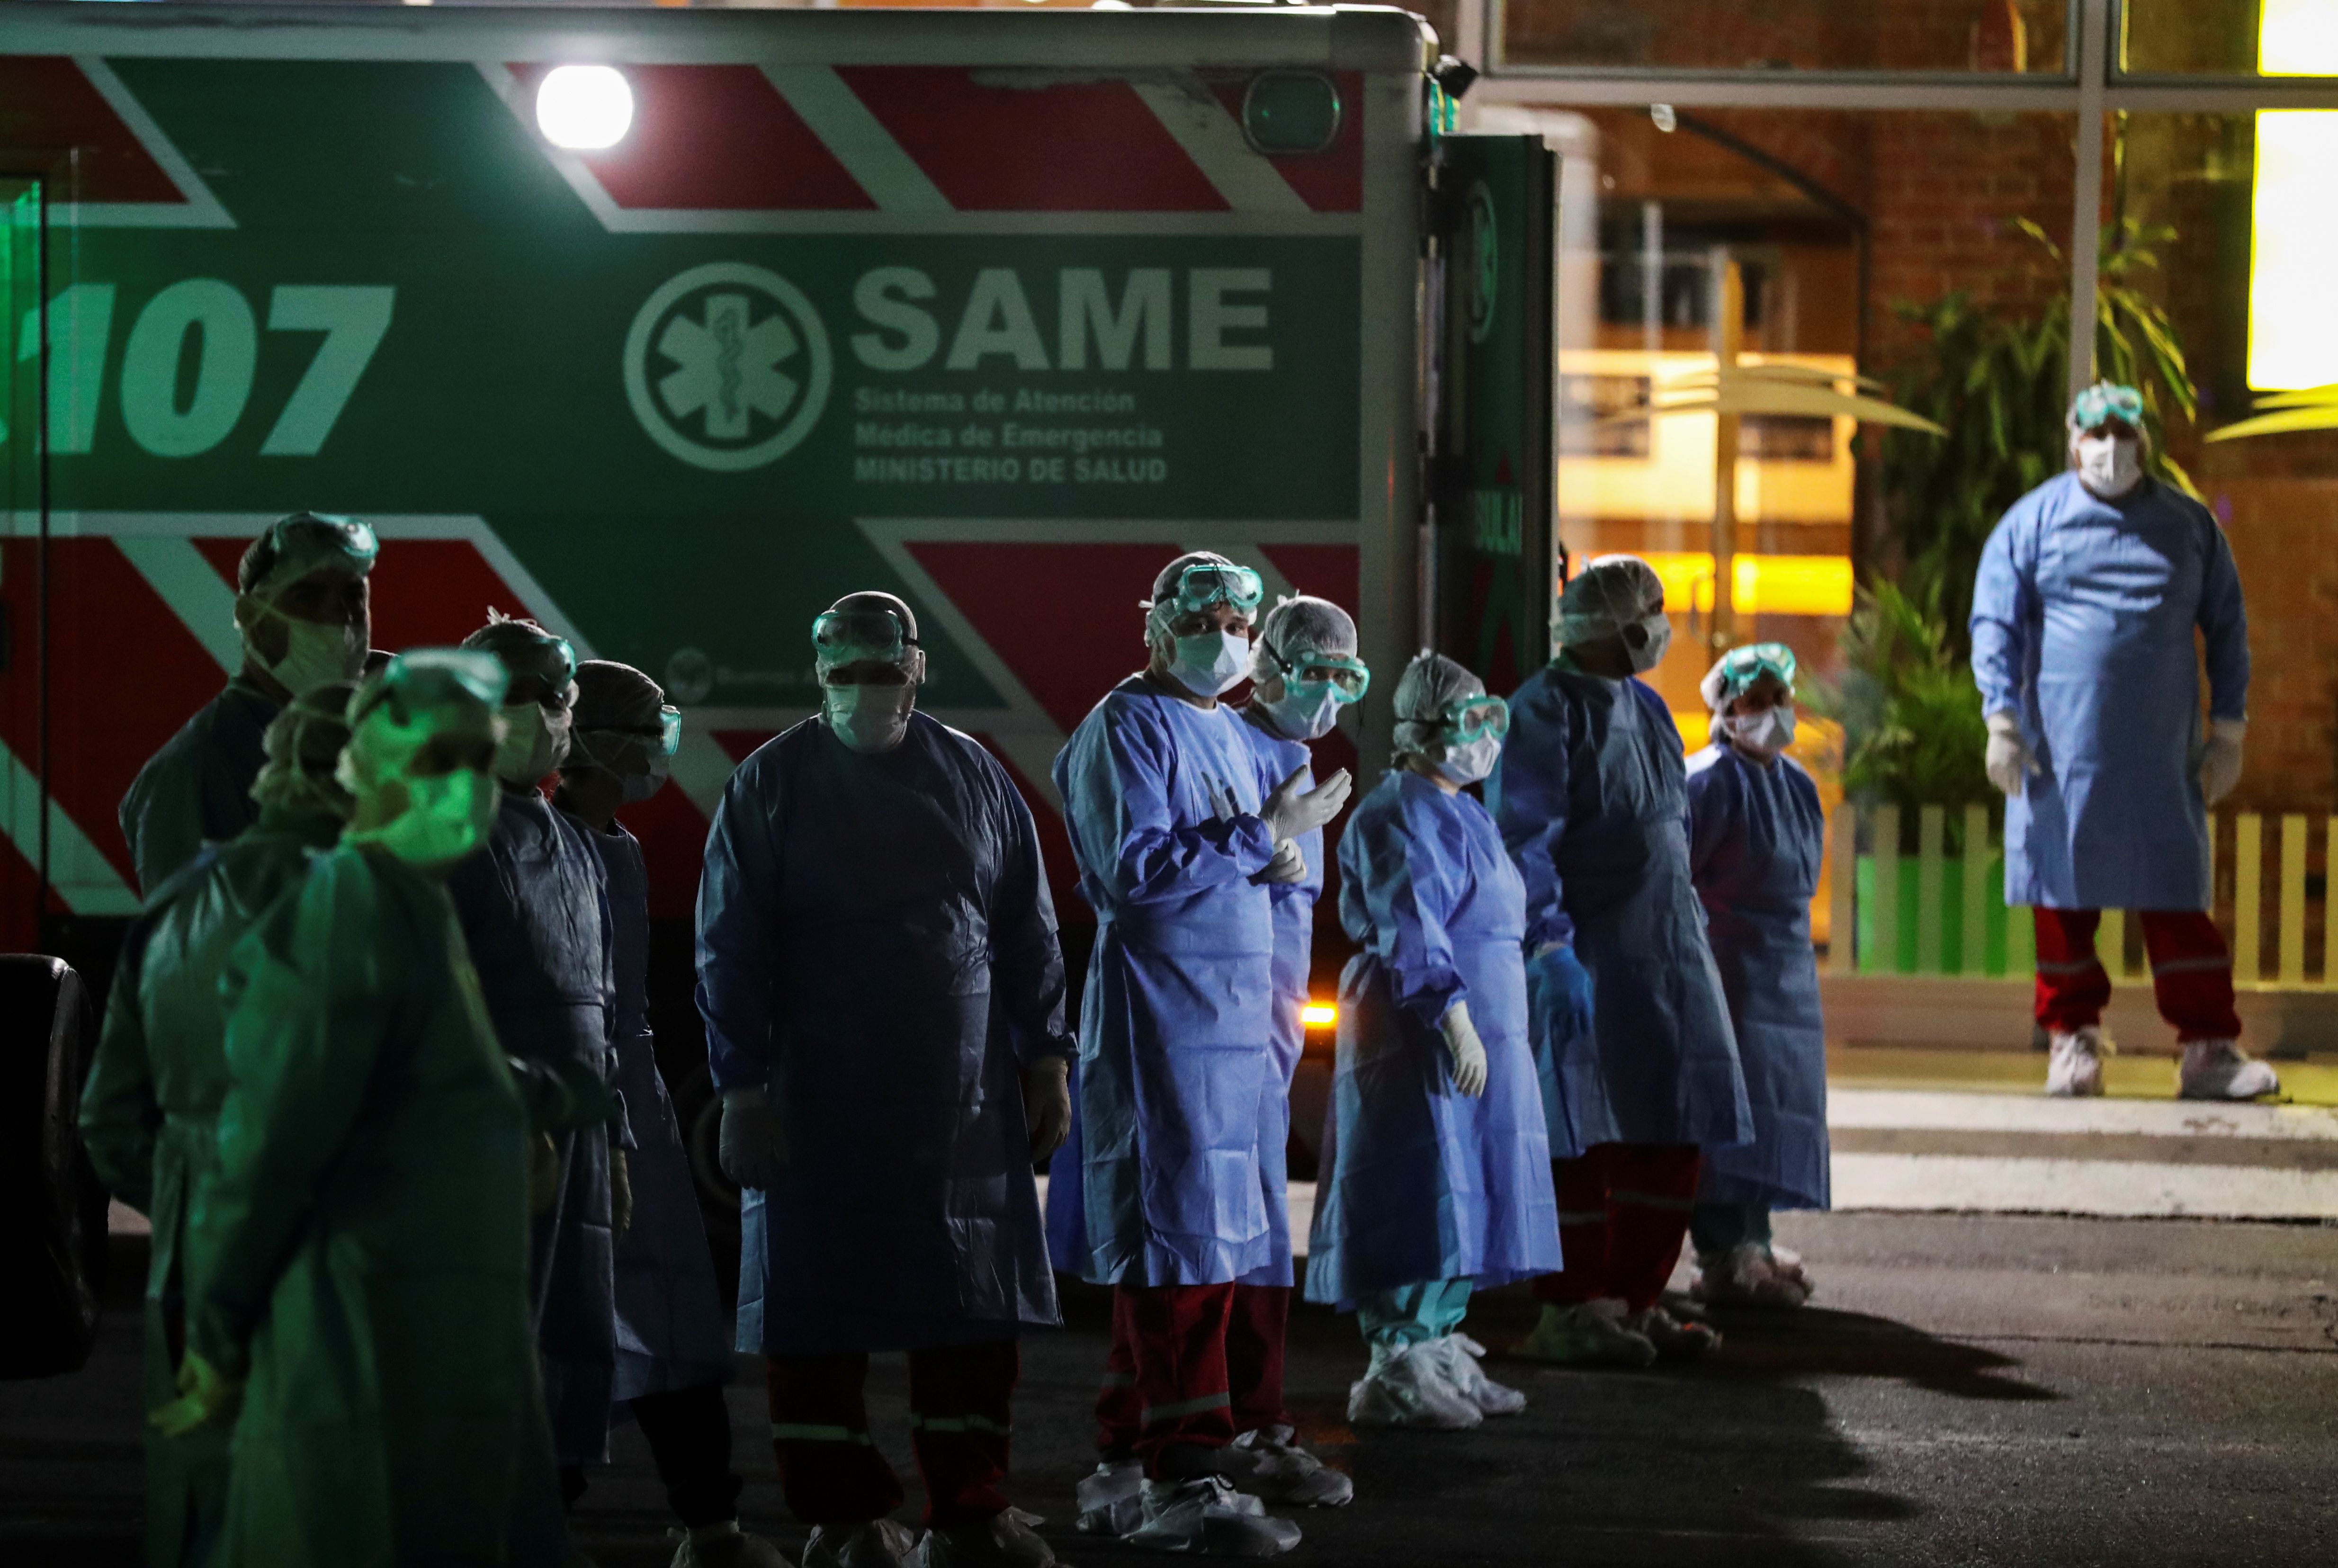 Las autoridades sanitarias llegaron al lugar y montaron el operativo previsto para este tipo de situaciones. (Reuters/Agustin Marcarian)